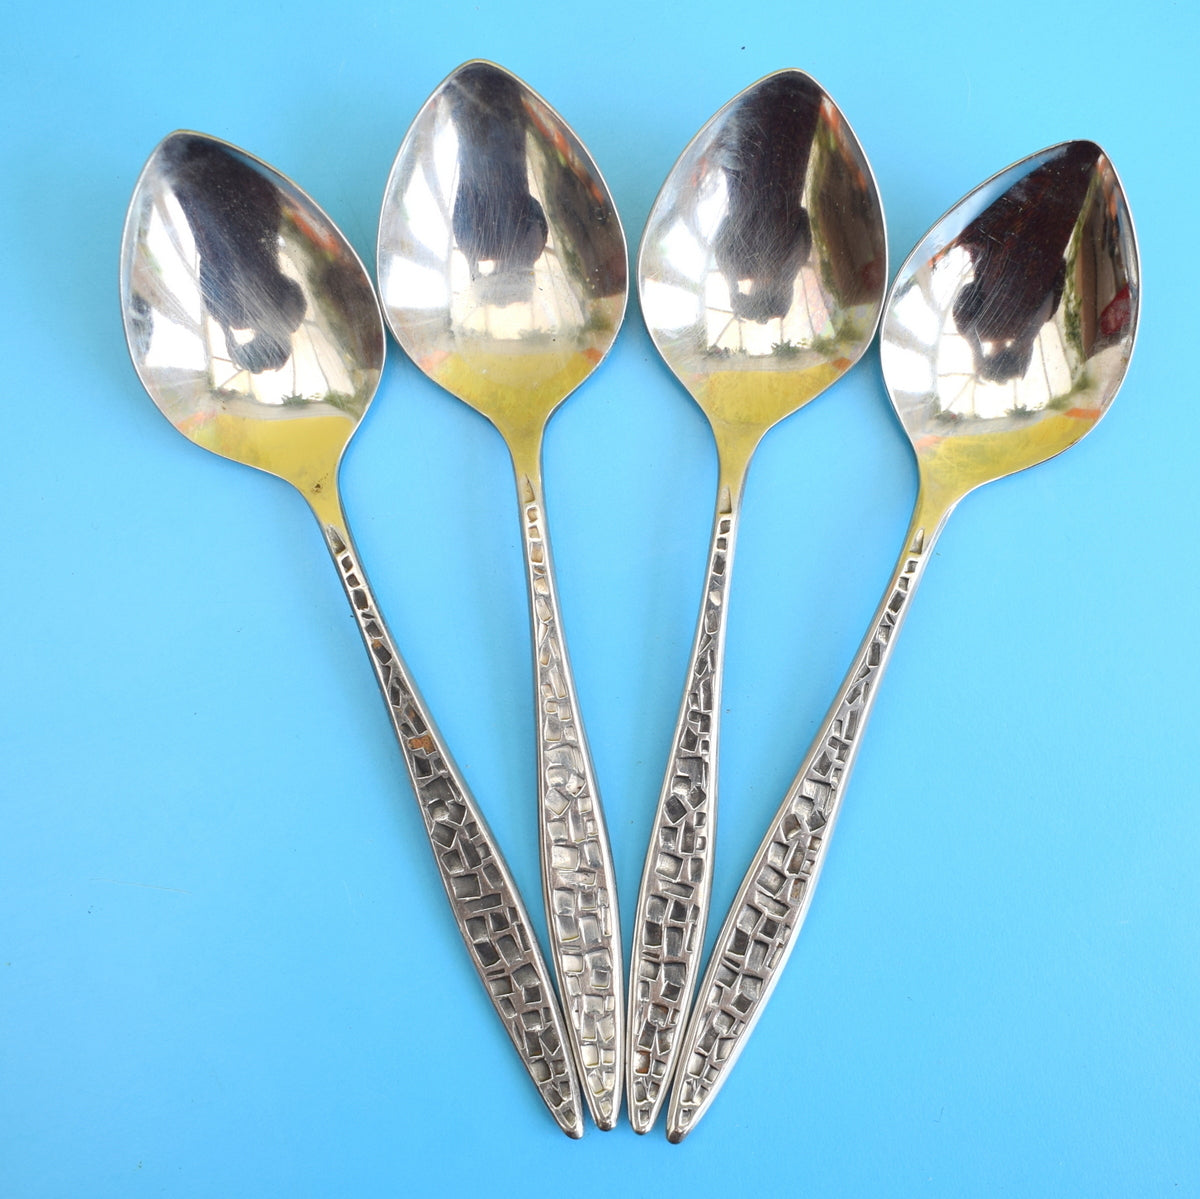 Vintage 1960s Viners Mosaic Cutlery - Spoons